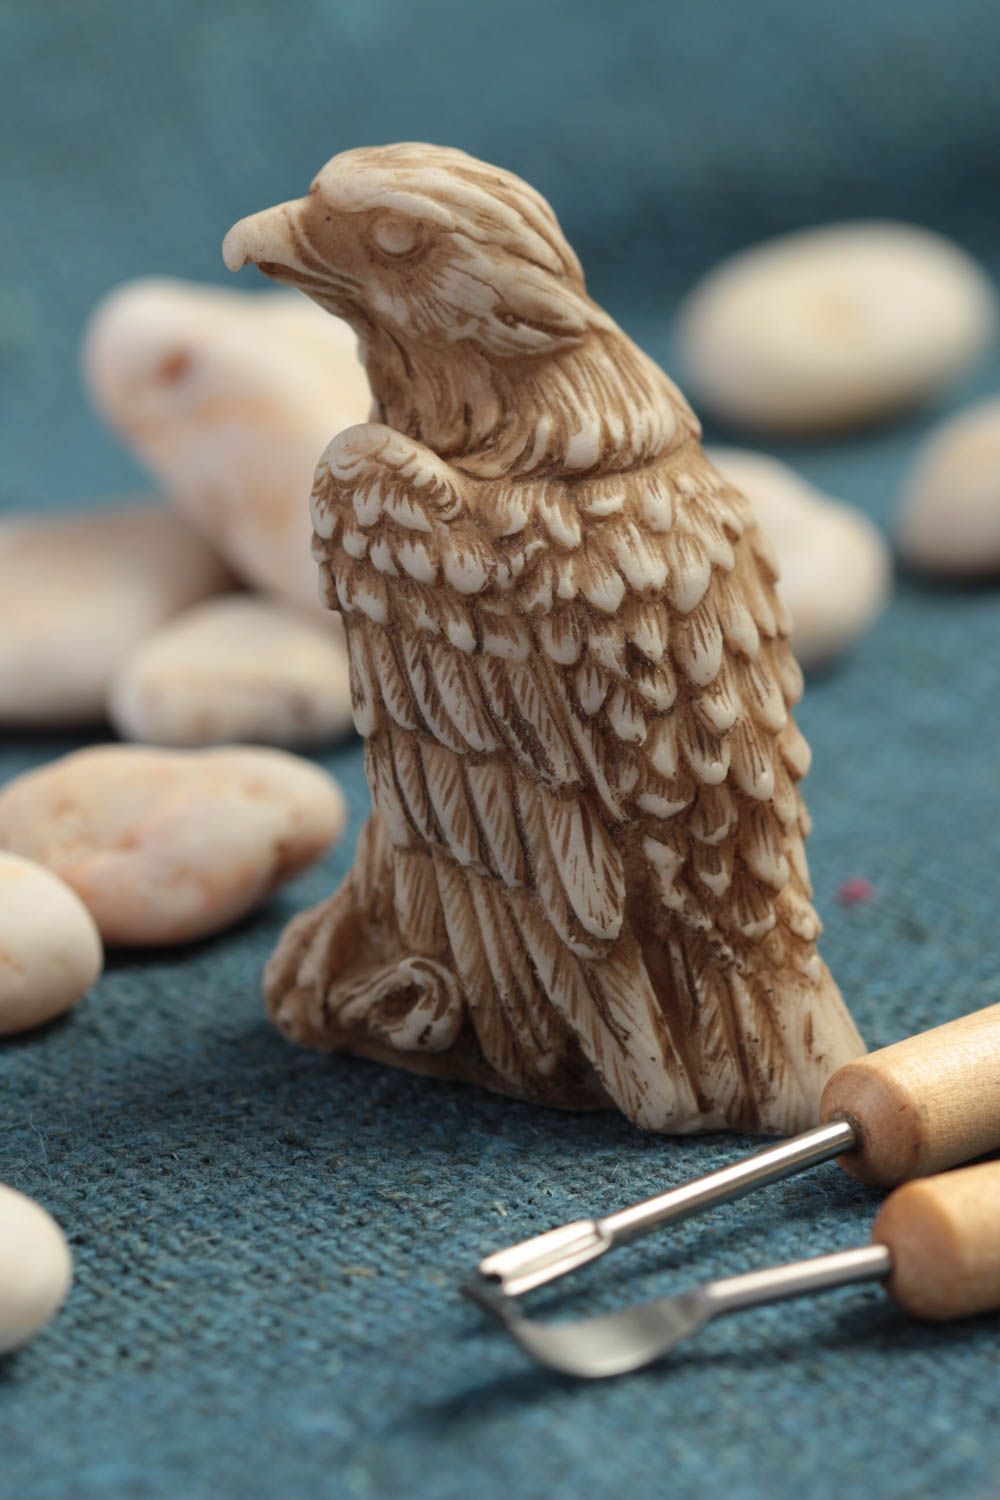 Handmade Adler Deko Figur Dekoideen Wohnzimmer Figur zum Bemalen schön originell foto 1